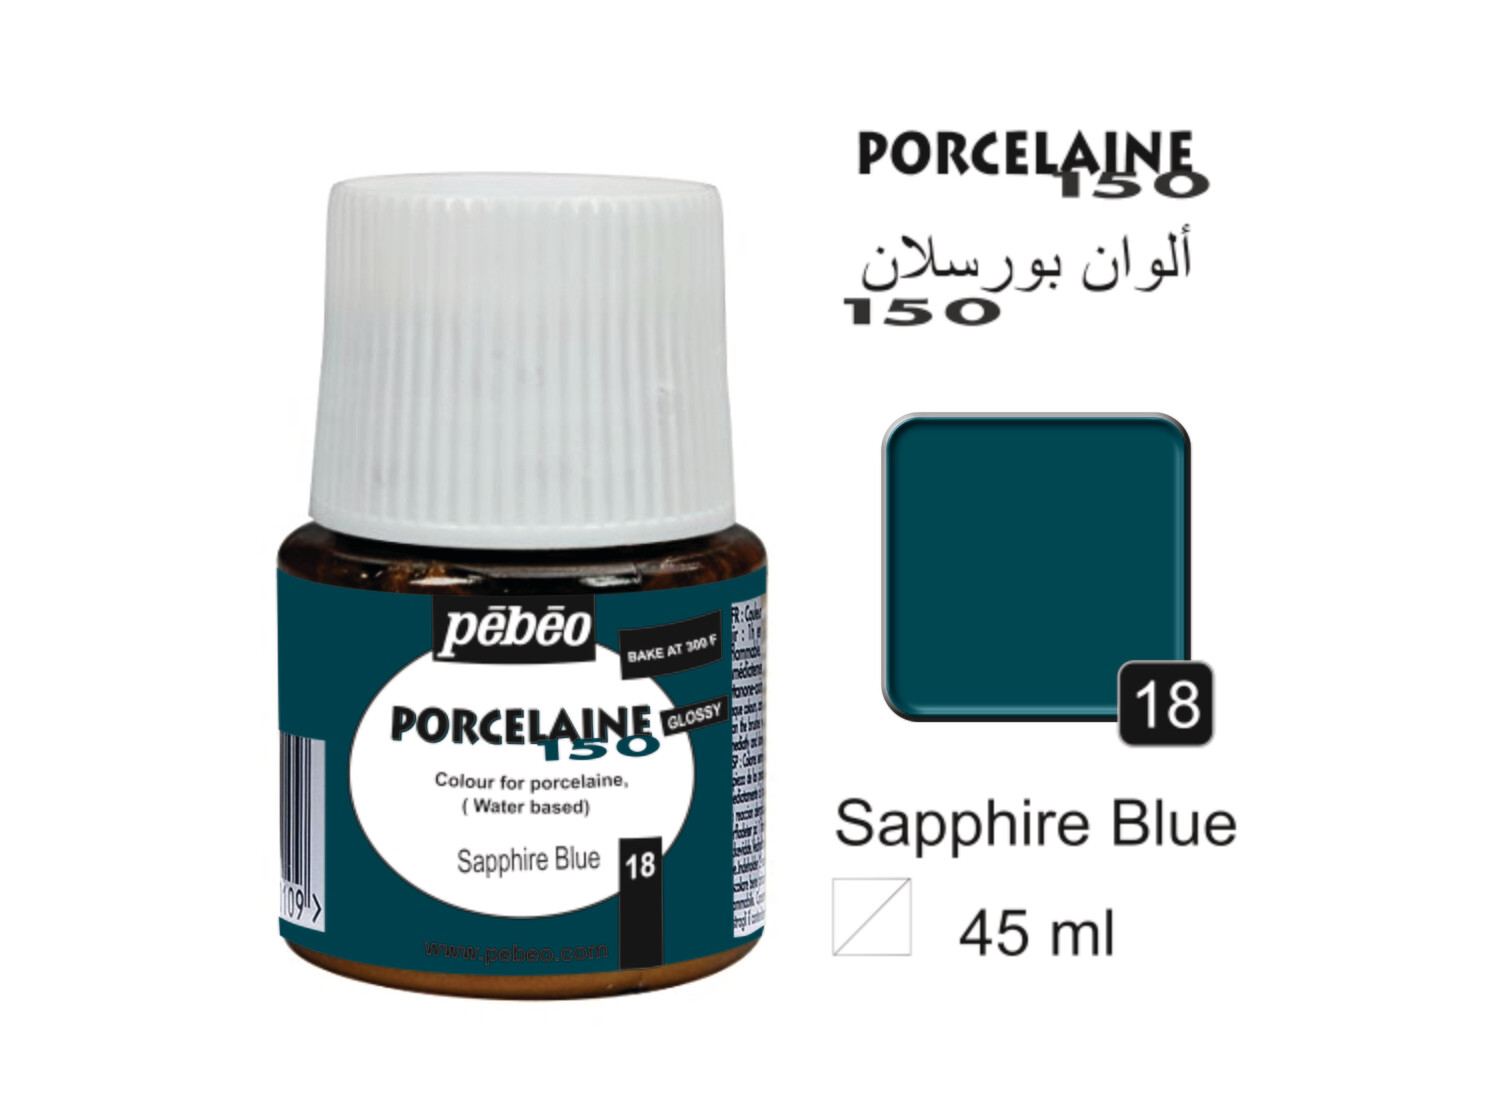 PORCELAINE 150, GLOSS 45 ml, Sapphire blue No. 18